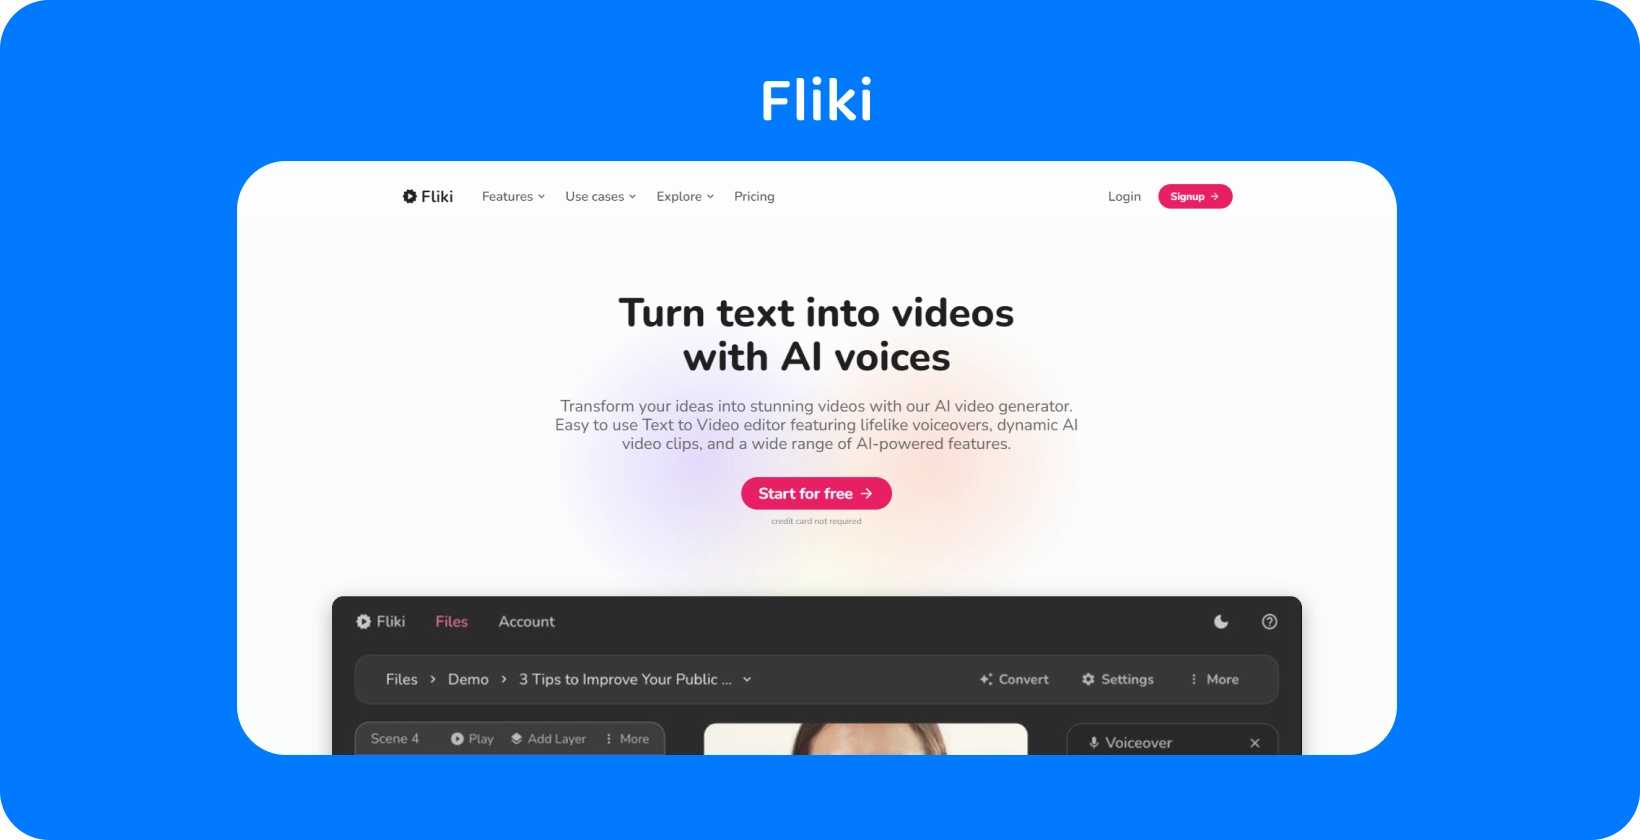 A página da plataforma do Fliki mostra como transformar texto em vídeos com vozes AI, oferecendo uma experiência de edição de texto para vídeo.